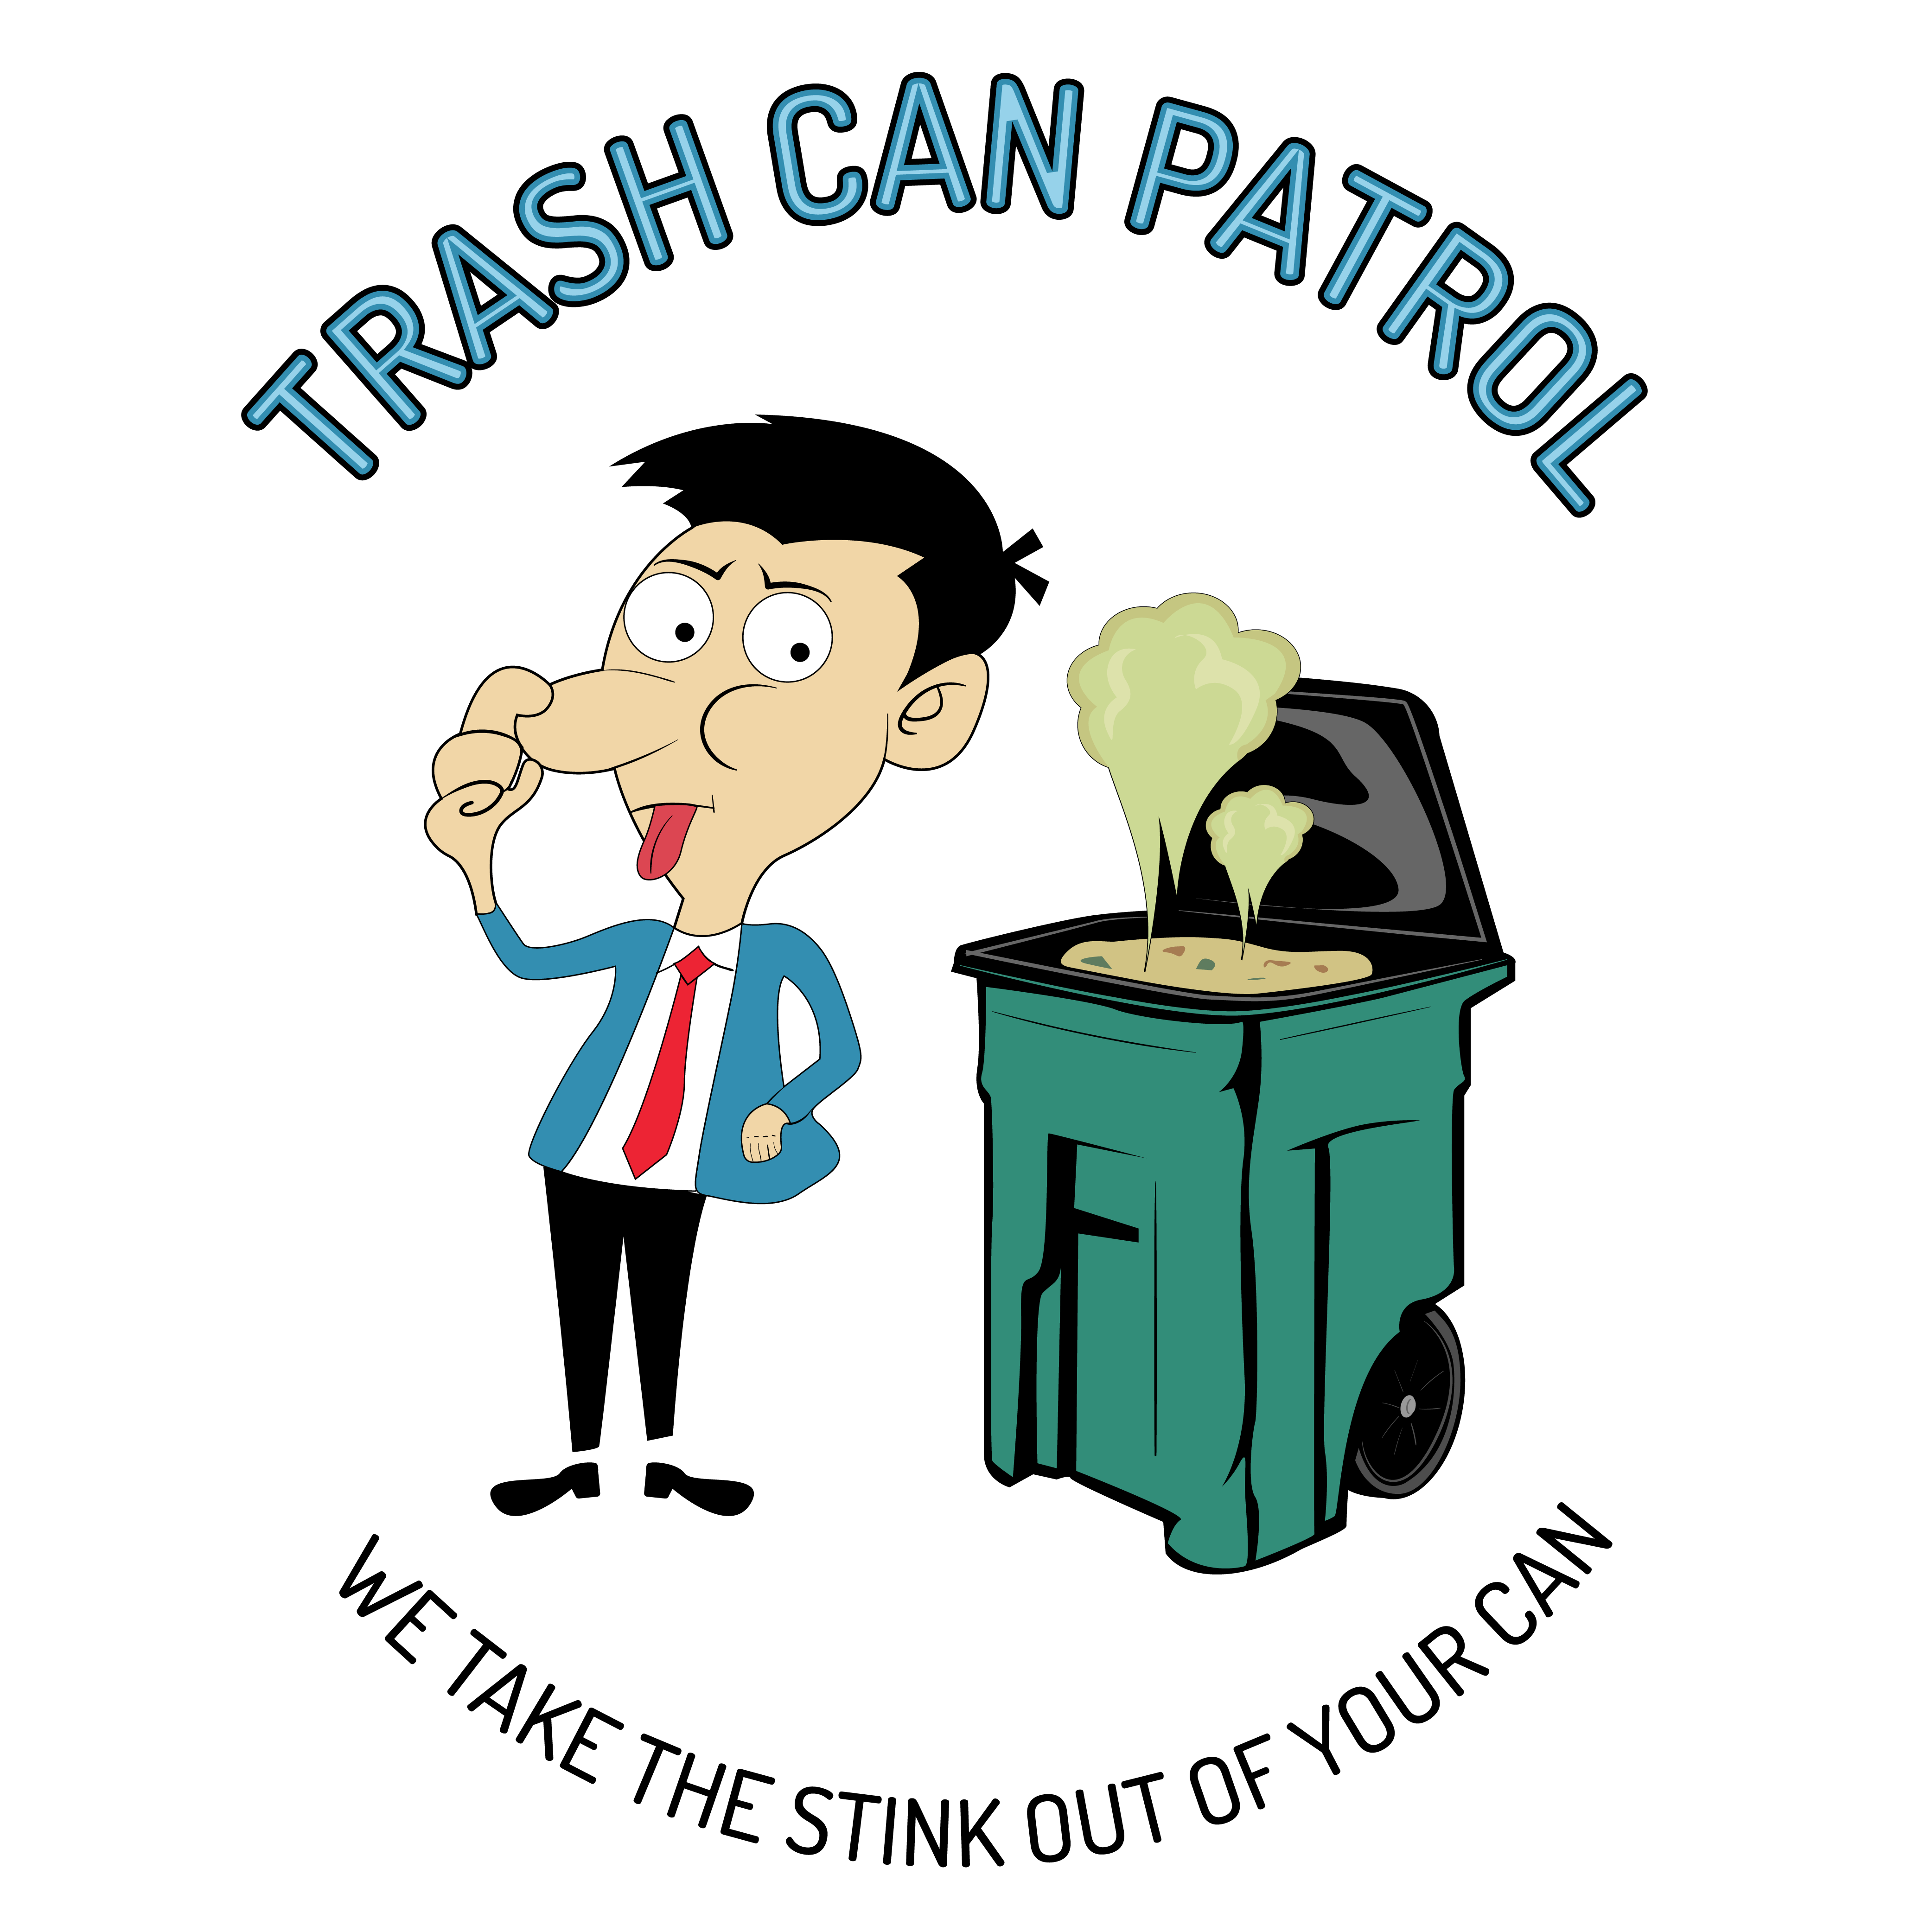 Trash Can Patrol